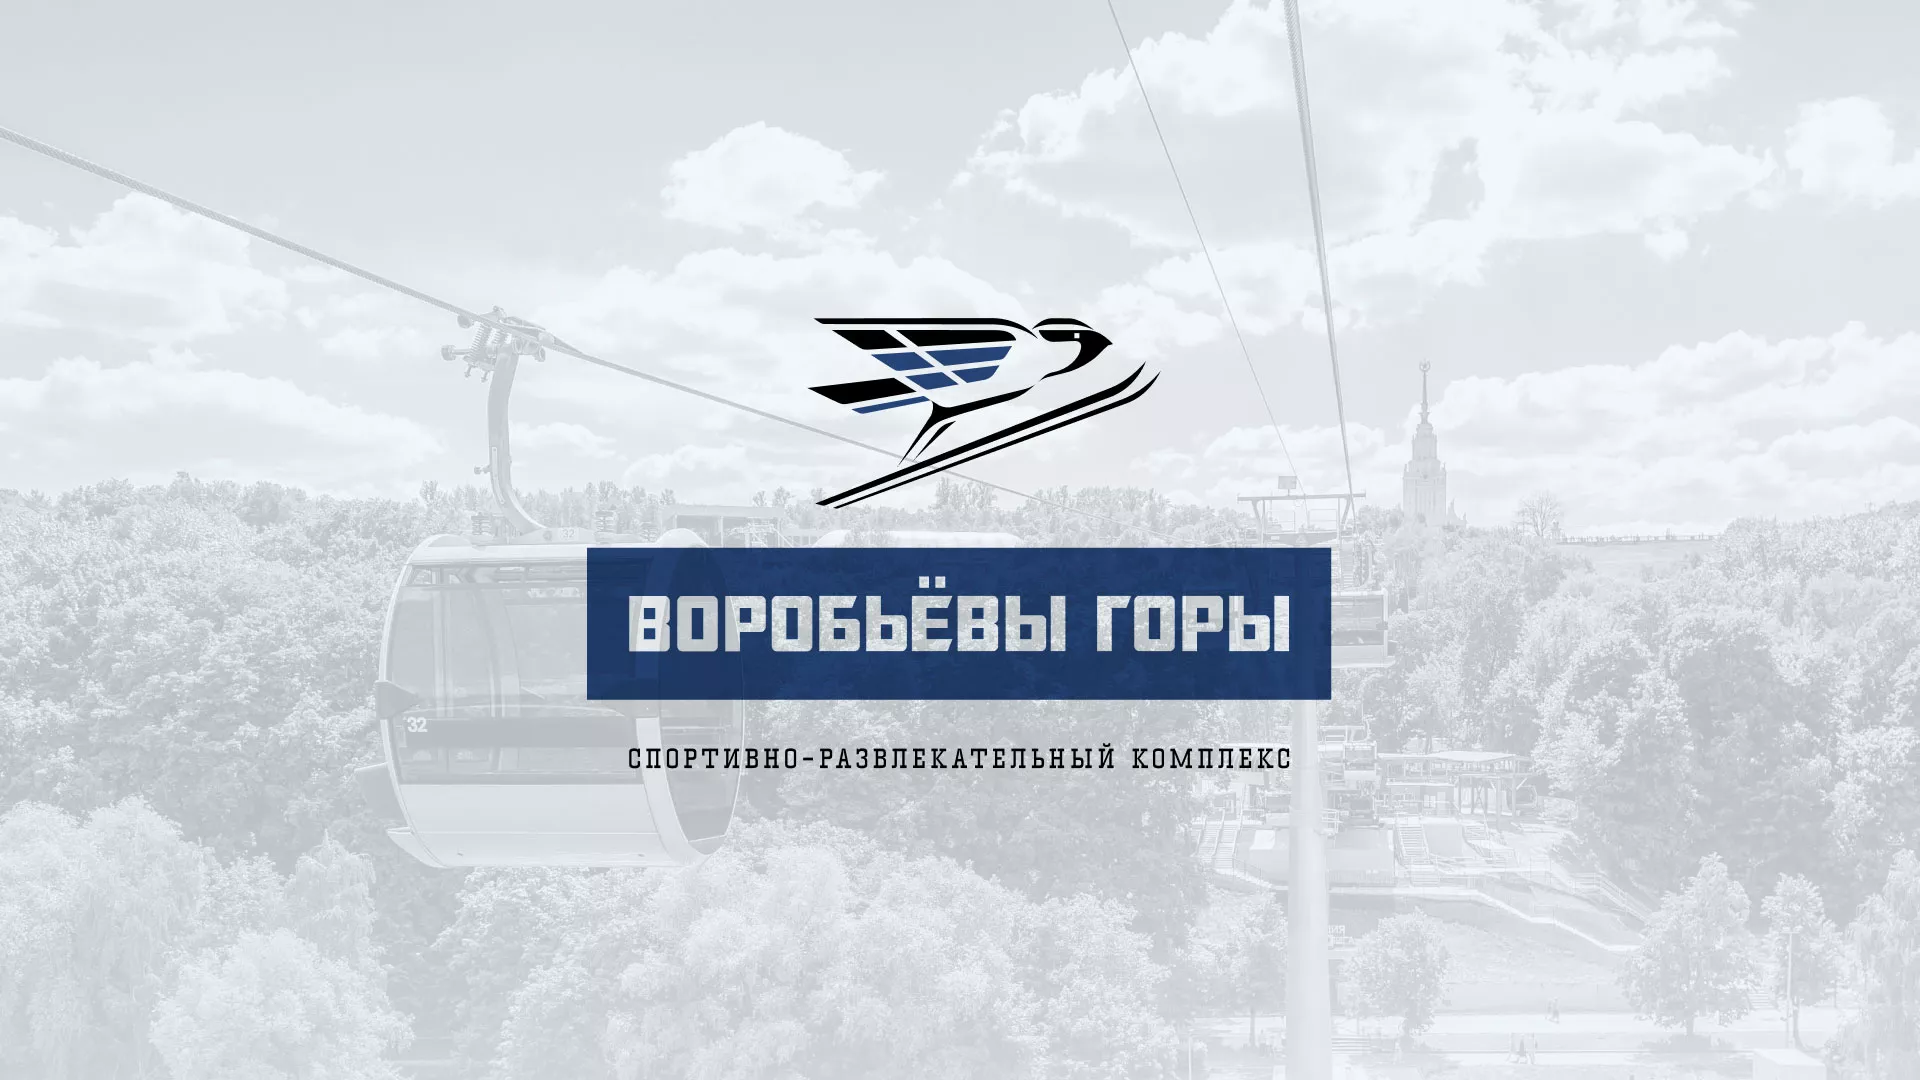 Разработка сайта в Новоржеве для спортивно-развлекательного комплекса «Воробьёвы горы»